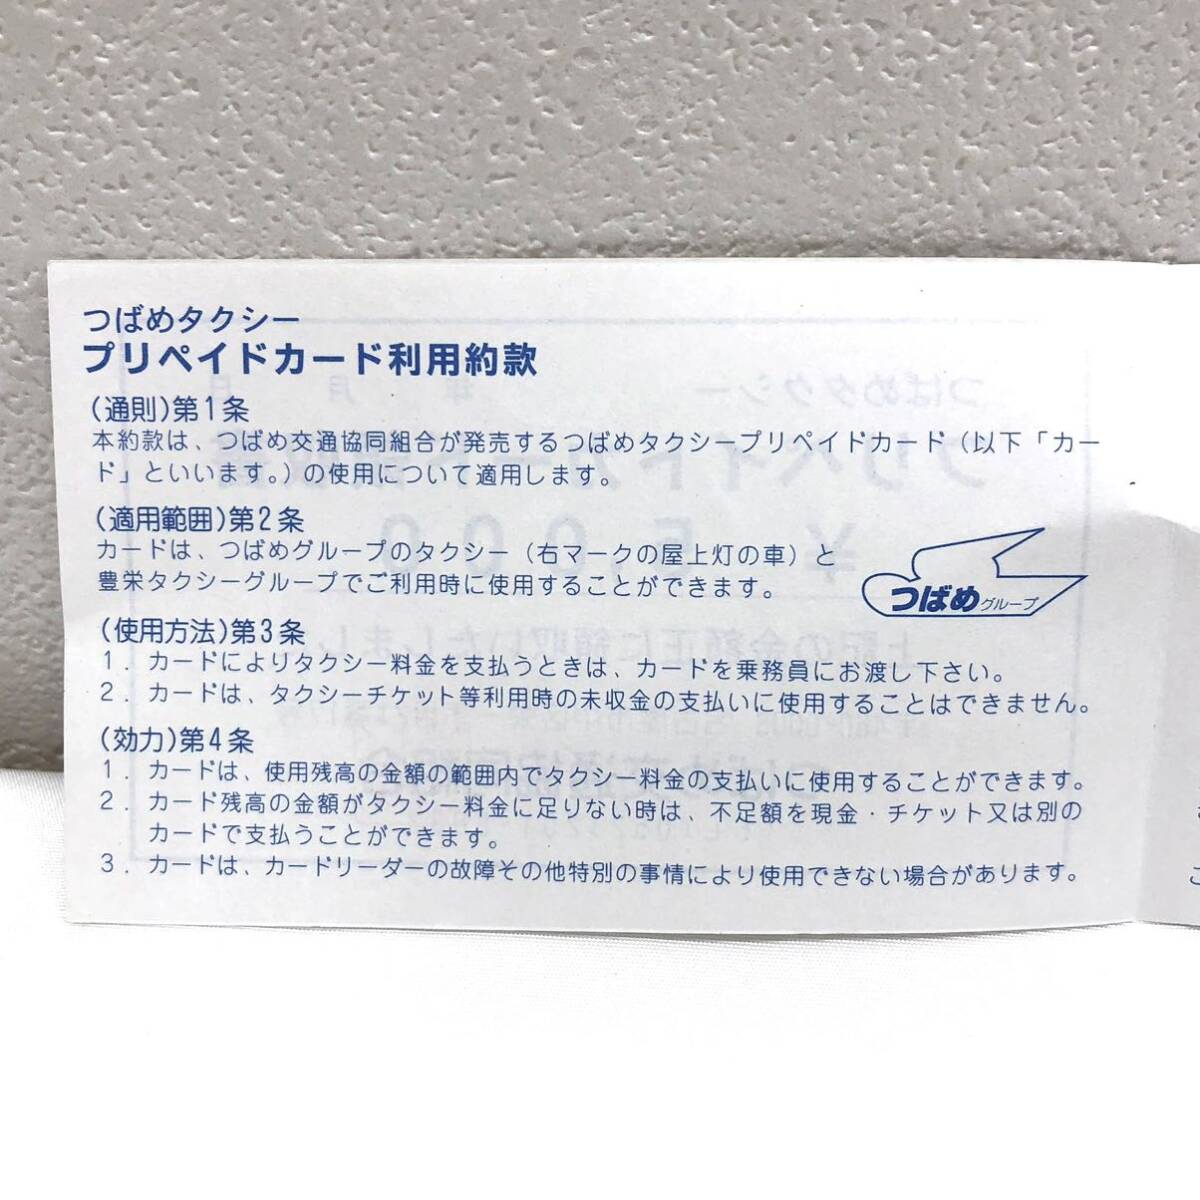 （M3582他)【未使用】 つばめタクシー プリペイドカード スマタク 額面15750円 の画像5